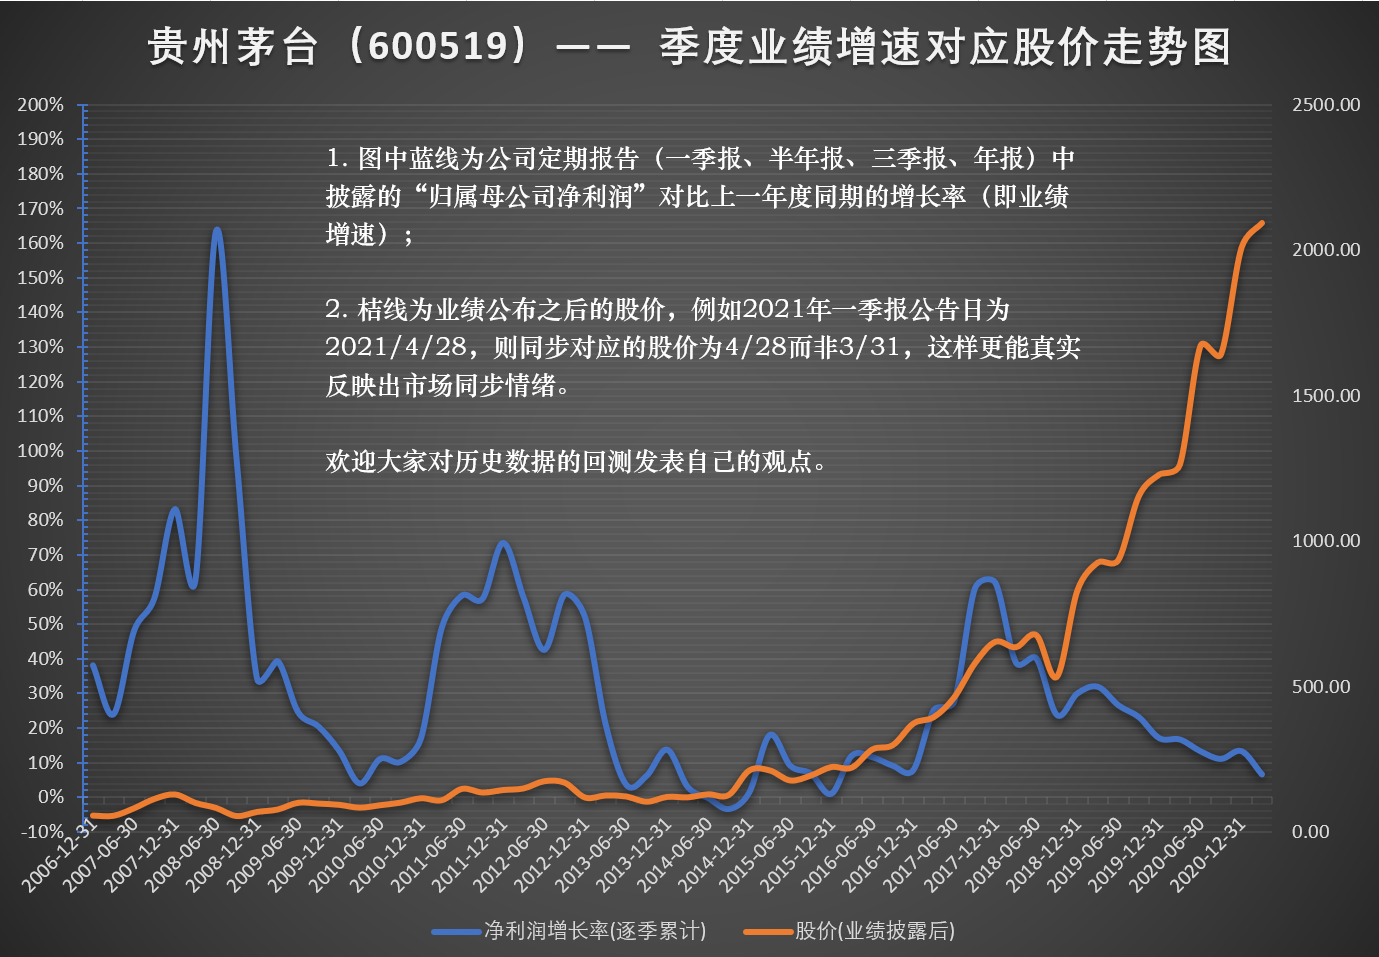 看图贵州茅台历史回测业绩增速与股价趋势图表欢迎大家看图评论